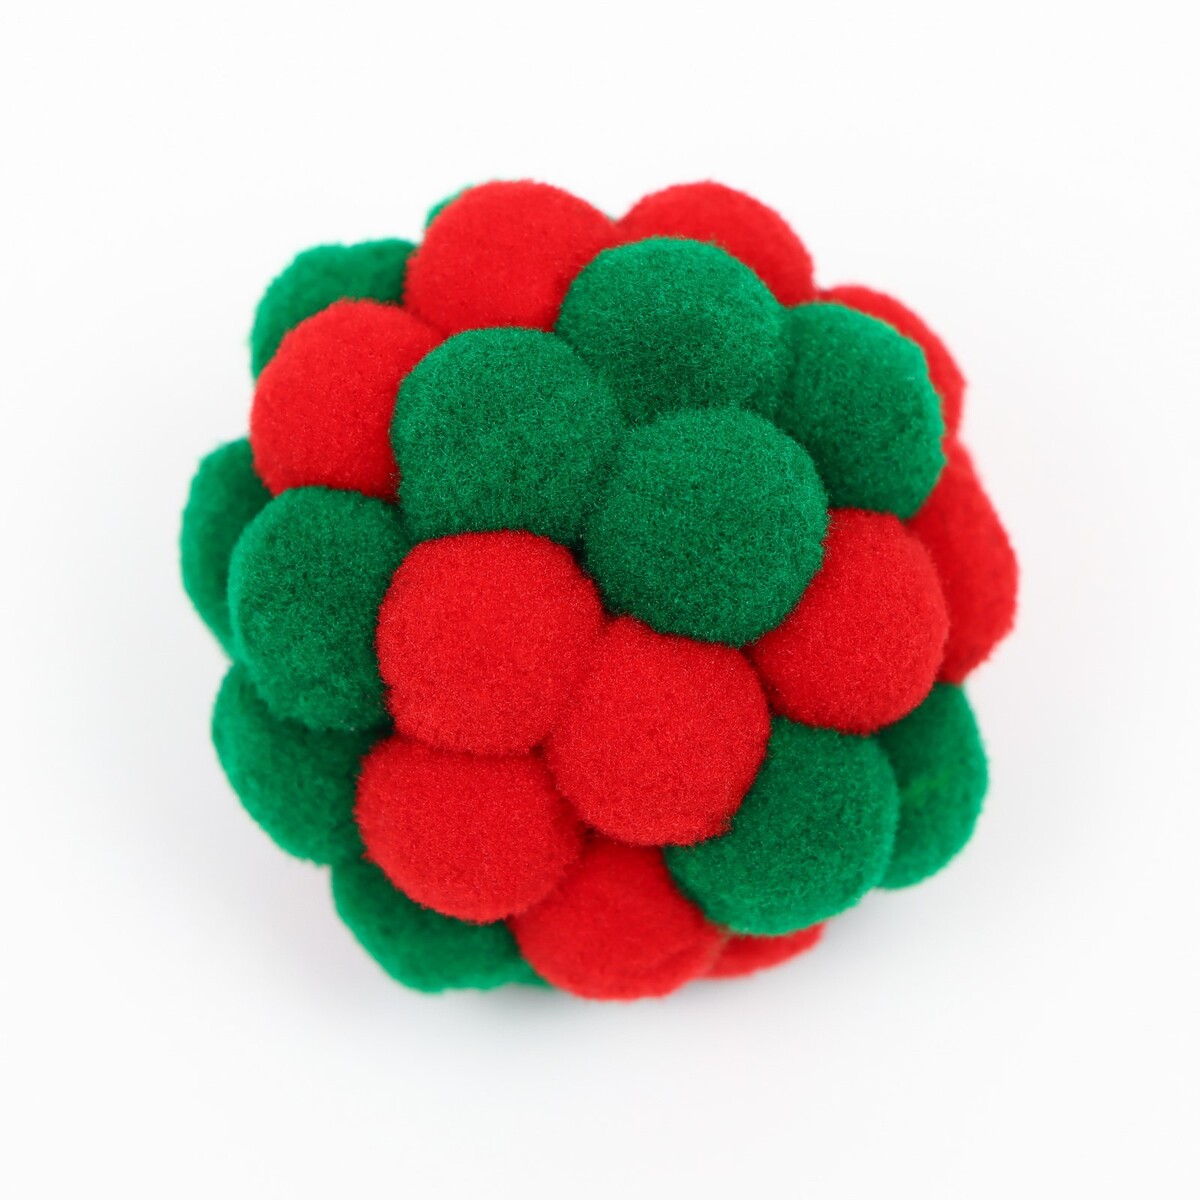 фото Мяч плюшевый для кошек, 5 см, красный/зеленый пижон